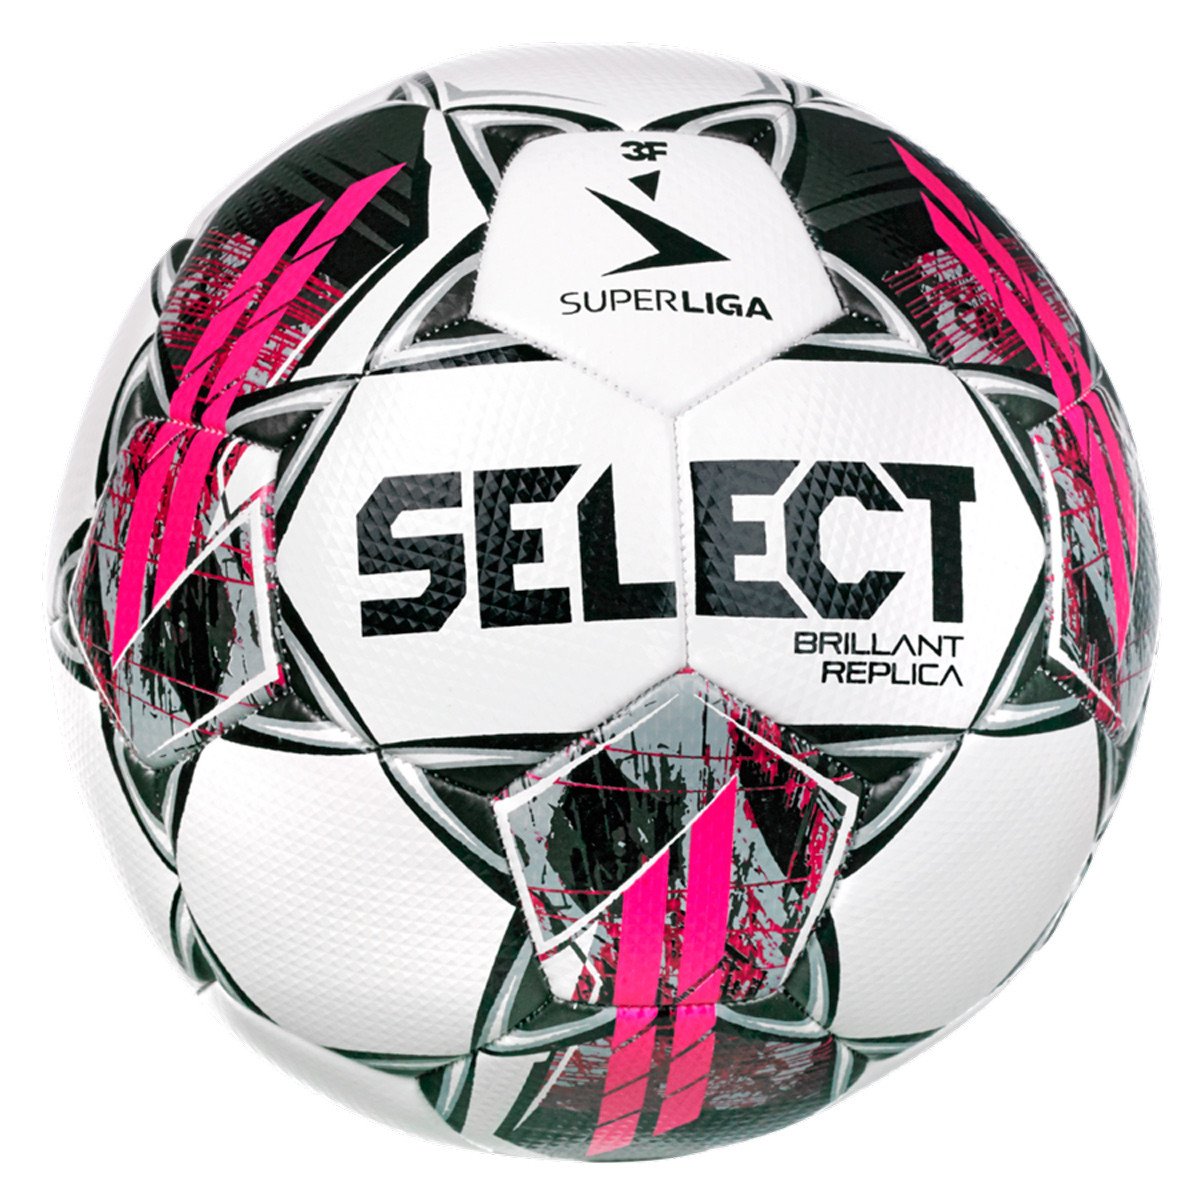 Select Brilliant Replica 3F Superliga V22 Fodbold